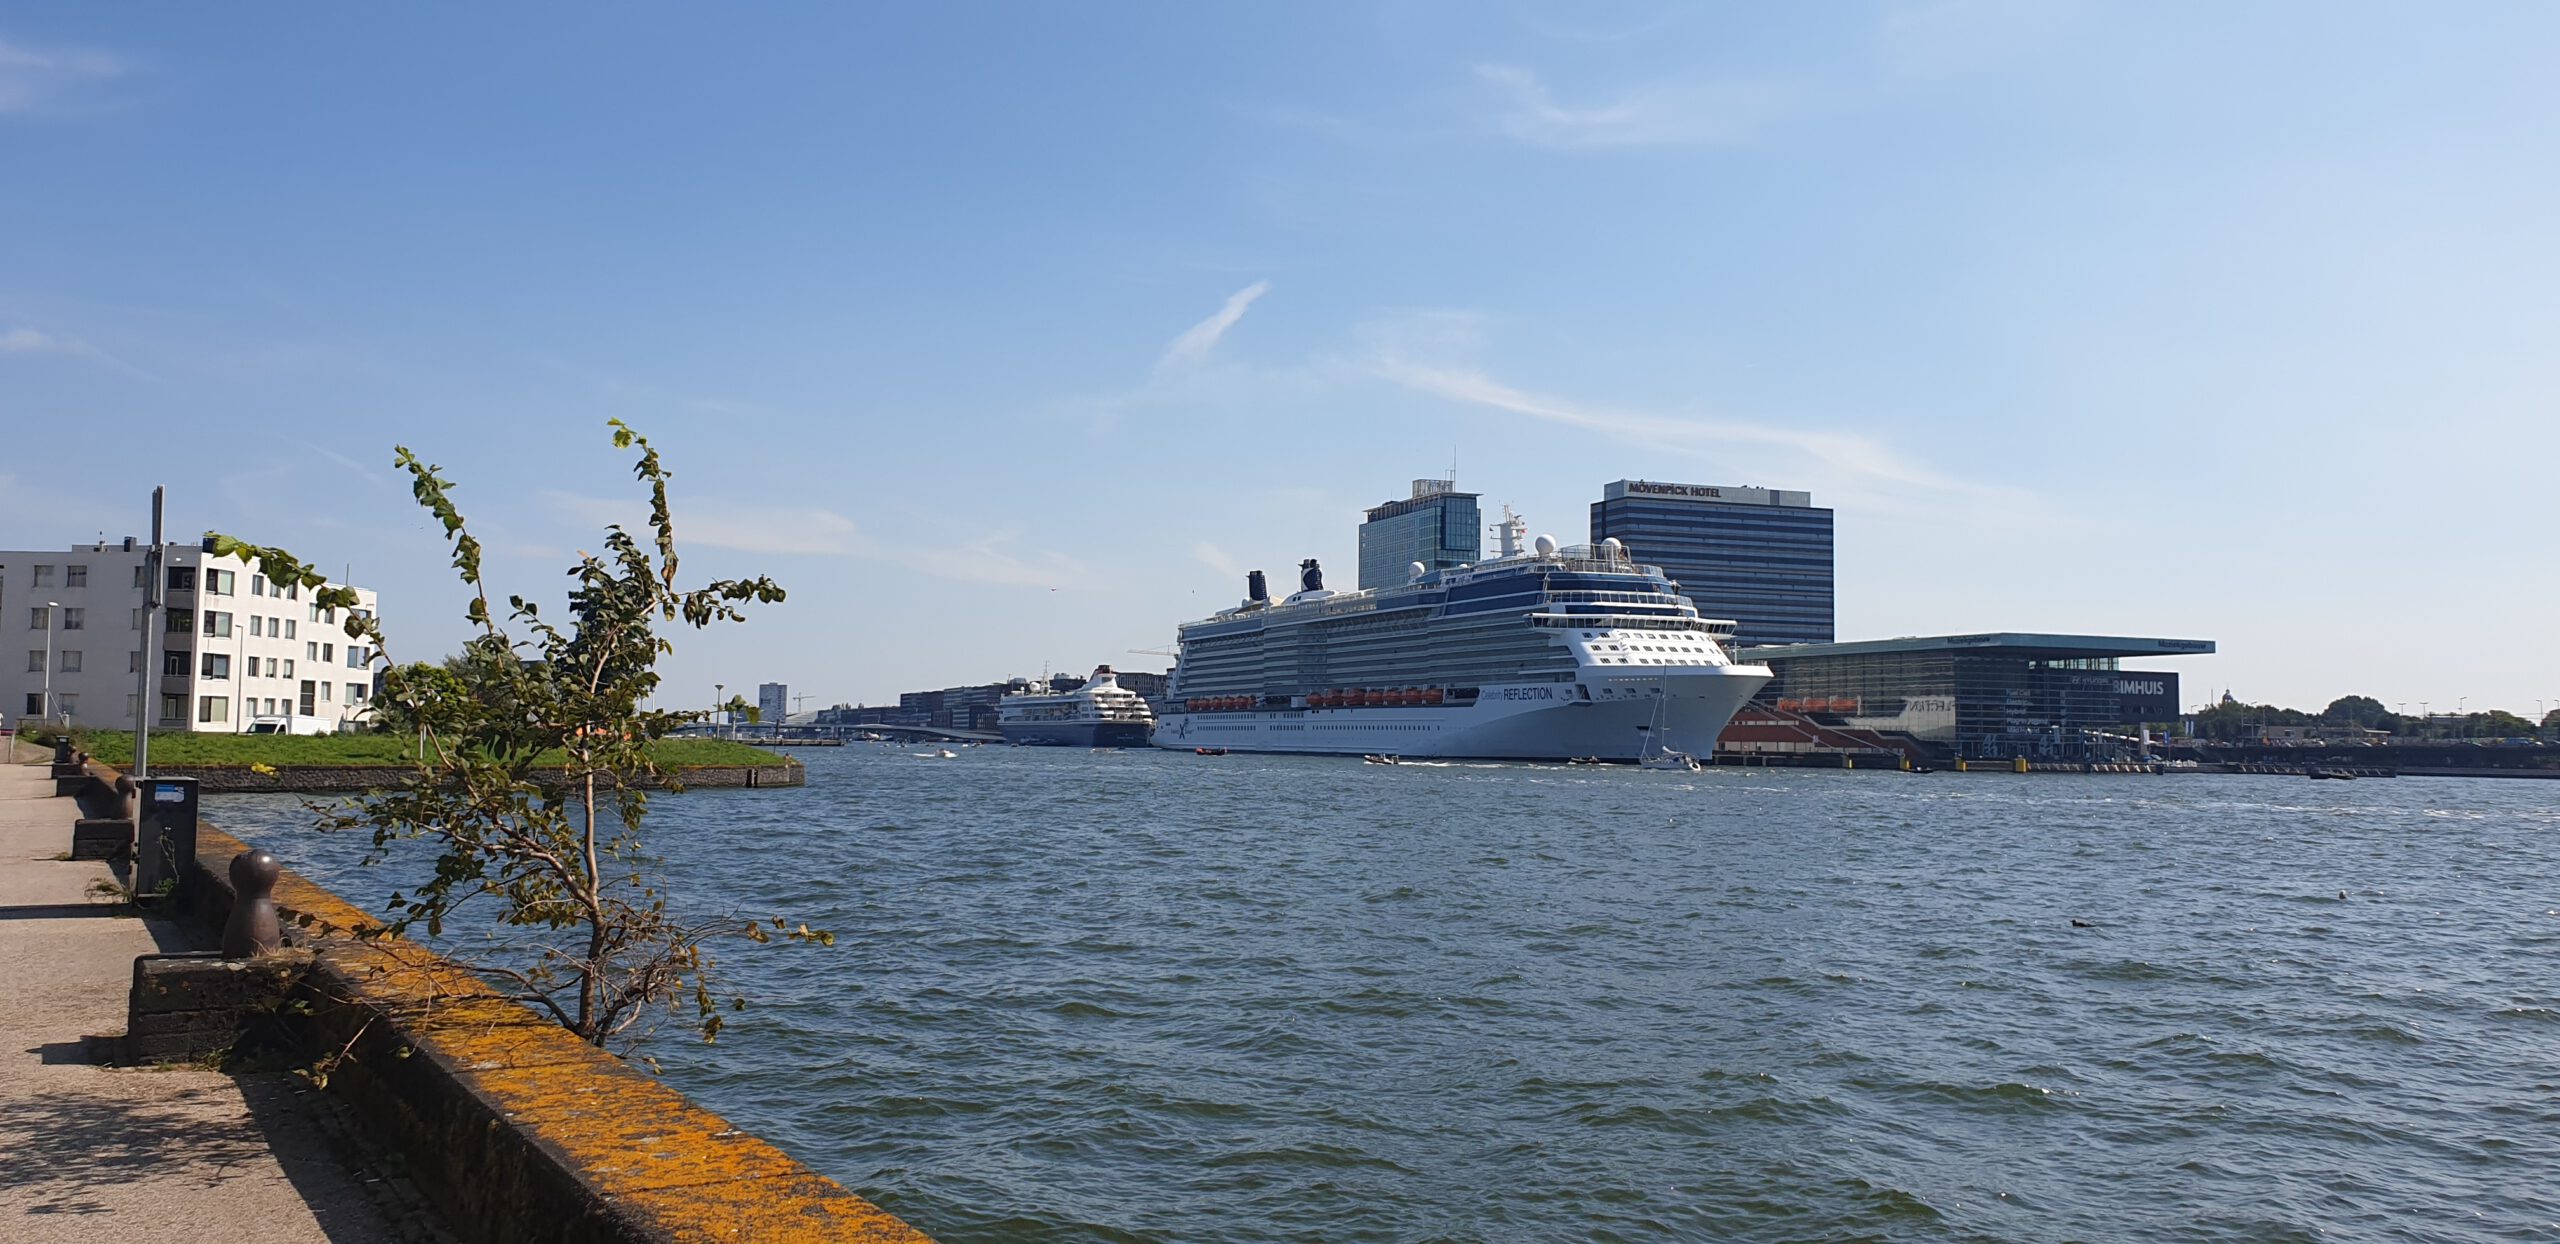 Nederland-Amsterdam-Cruise-Haven